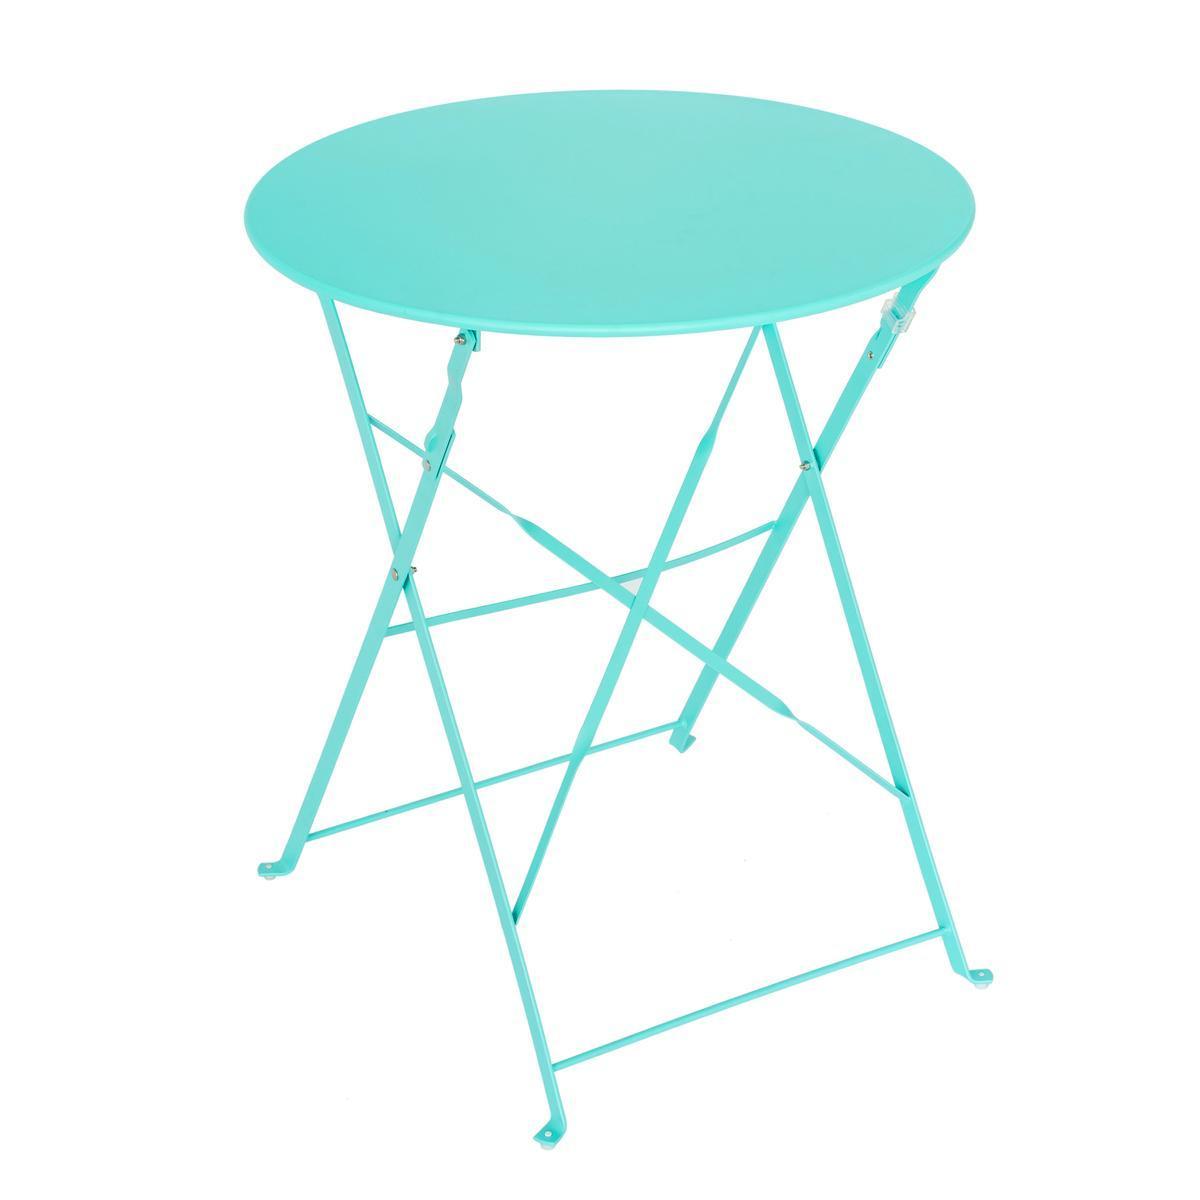 Table Diana ronde - ø 60 x H 71 cm - Différents modèles - Bleu turquoise - MOOREA